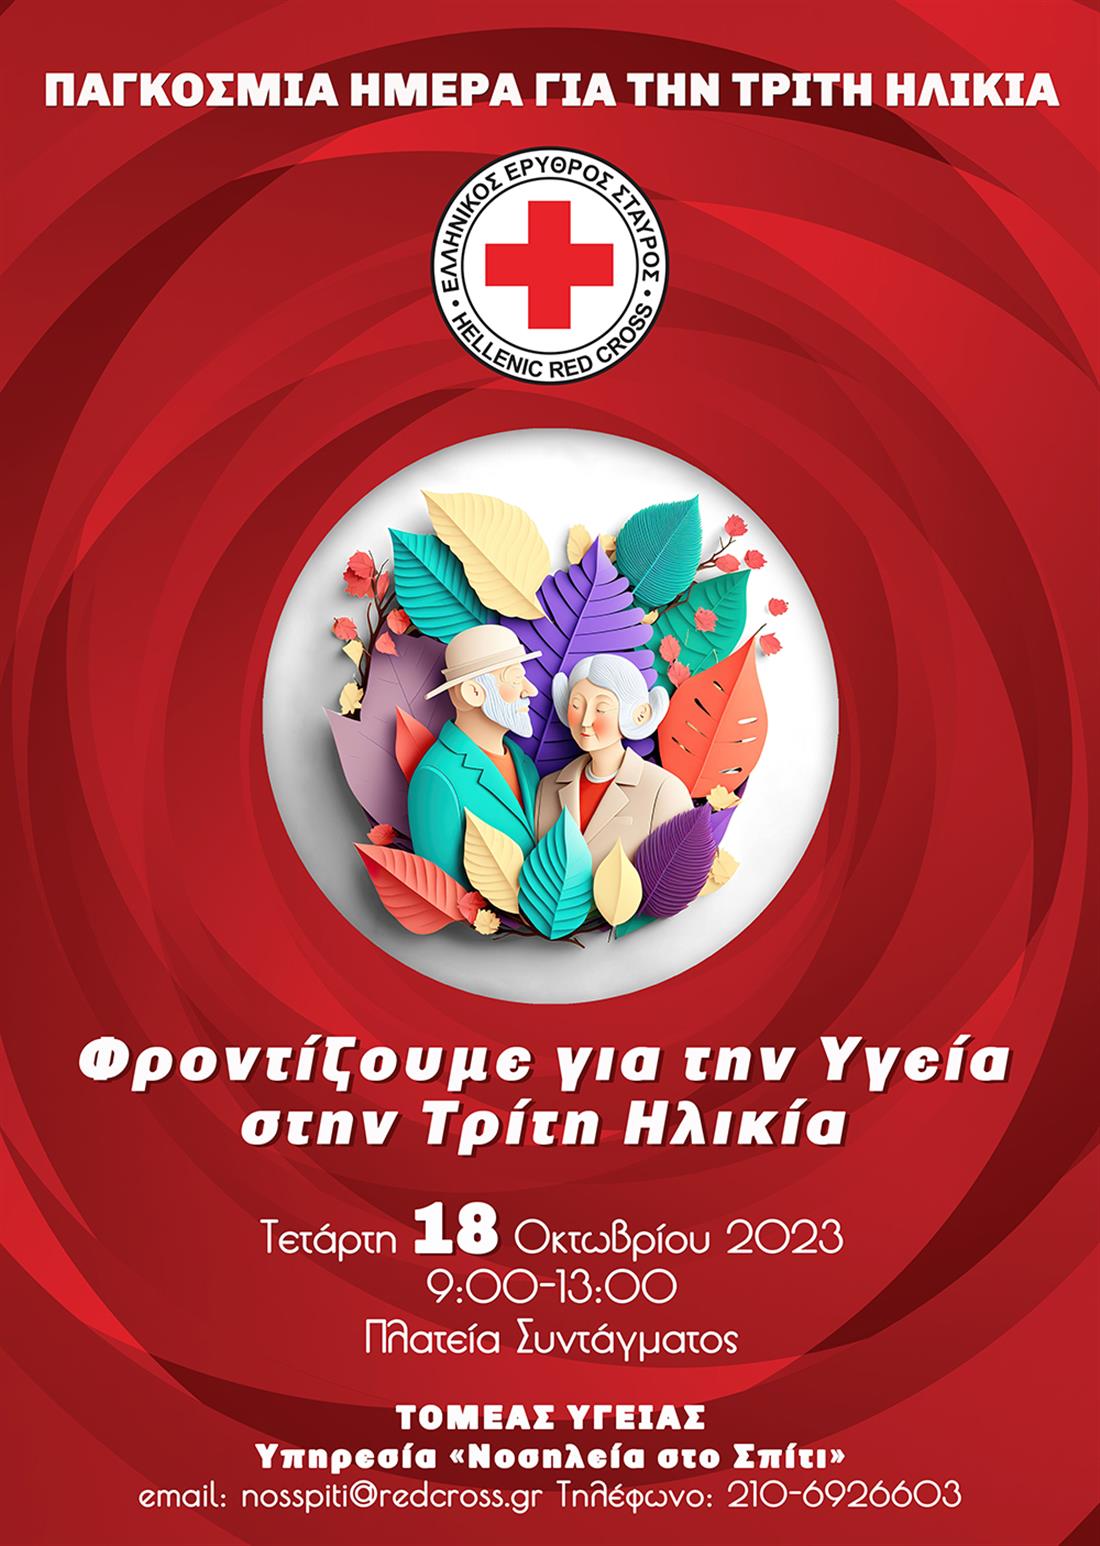 Ελληνικός Ερυθρός Σταυρός - δράση ενημέρωσης - Τρίτη Ηλικία - Πλατεία Συντάγματος